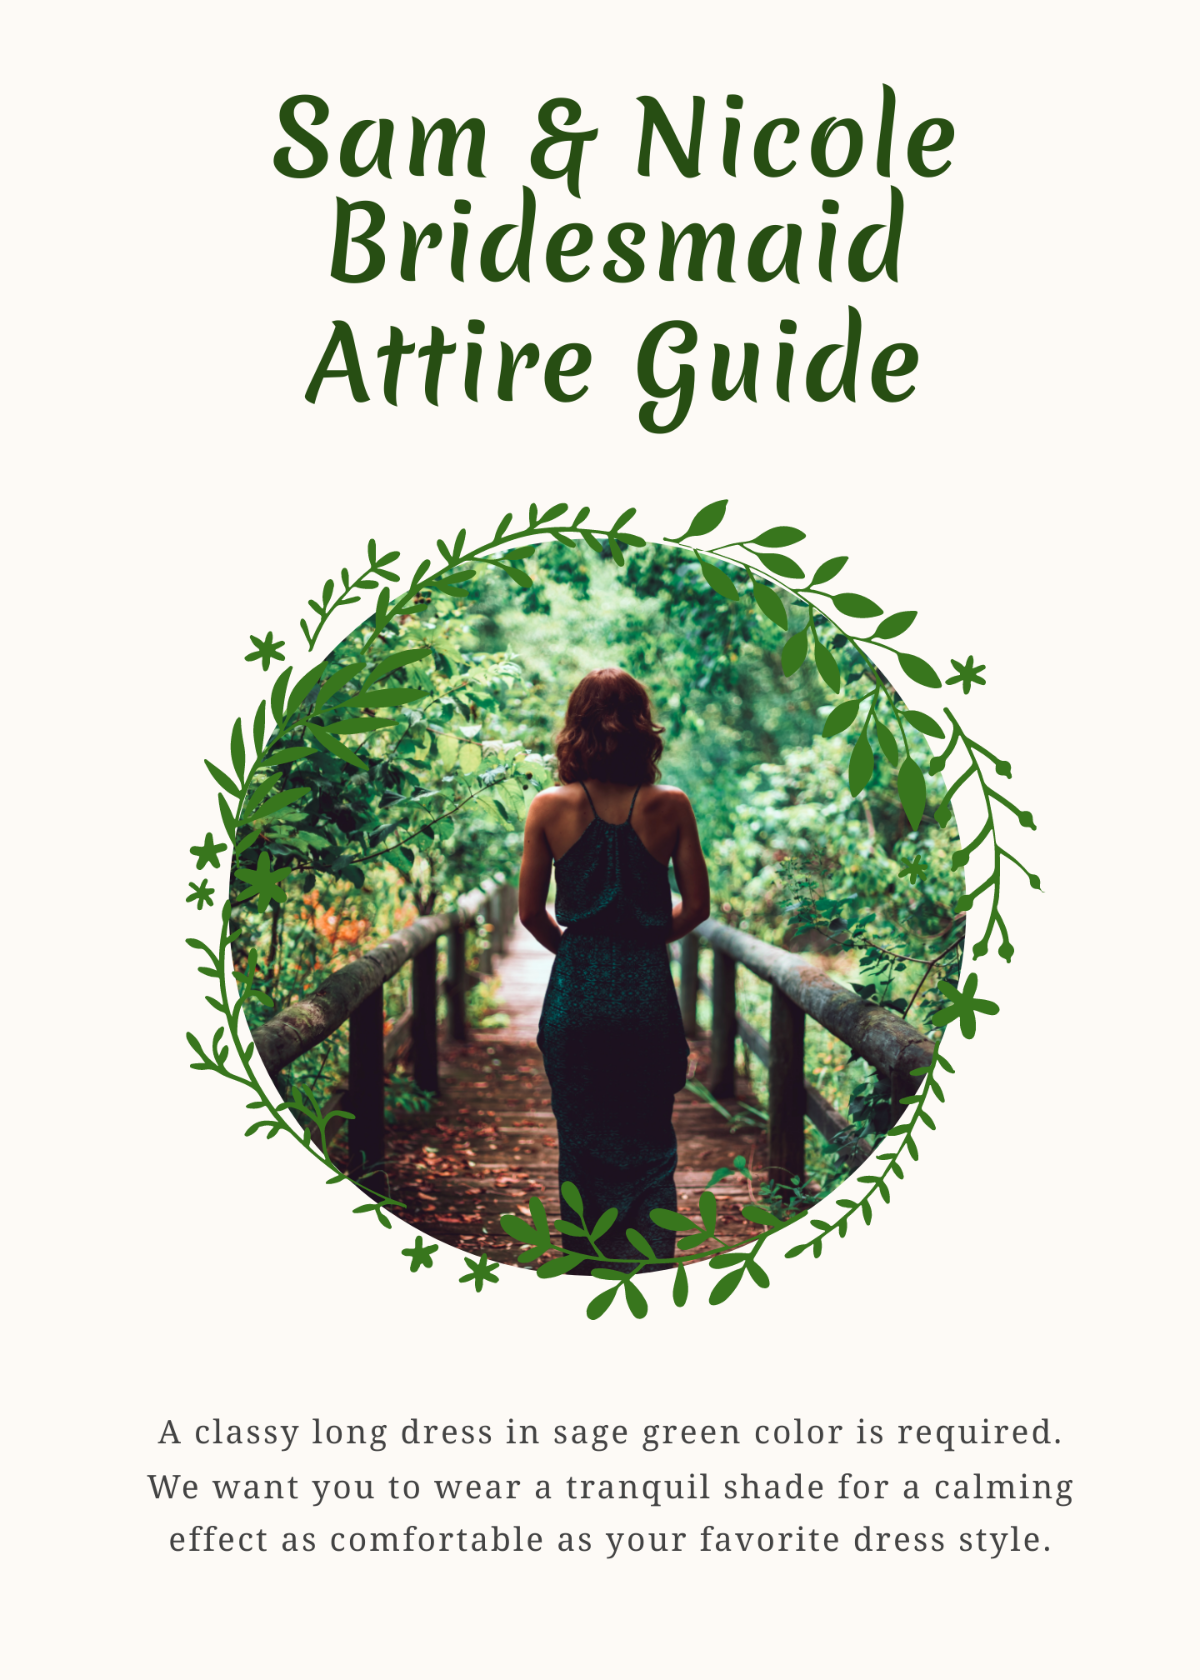 Free Attire Guide Bridesmaid Card Template